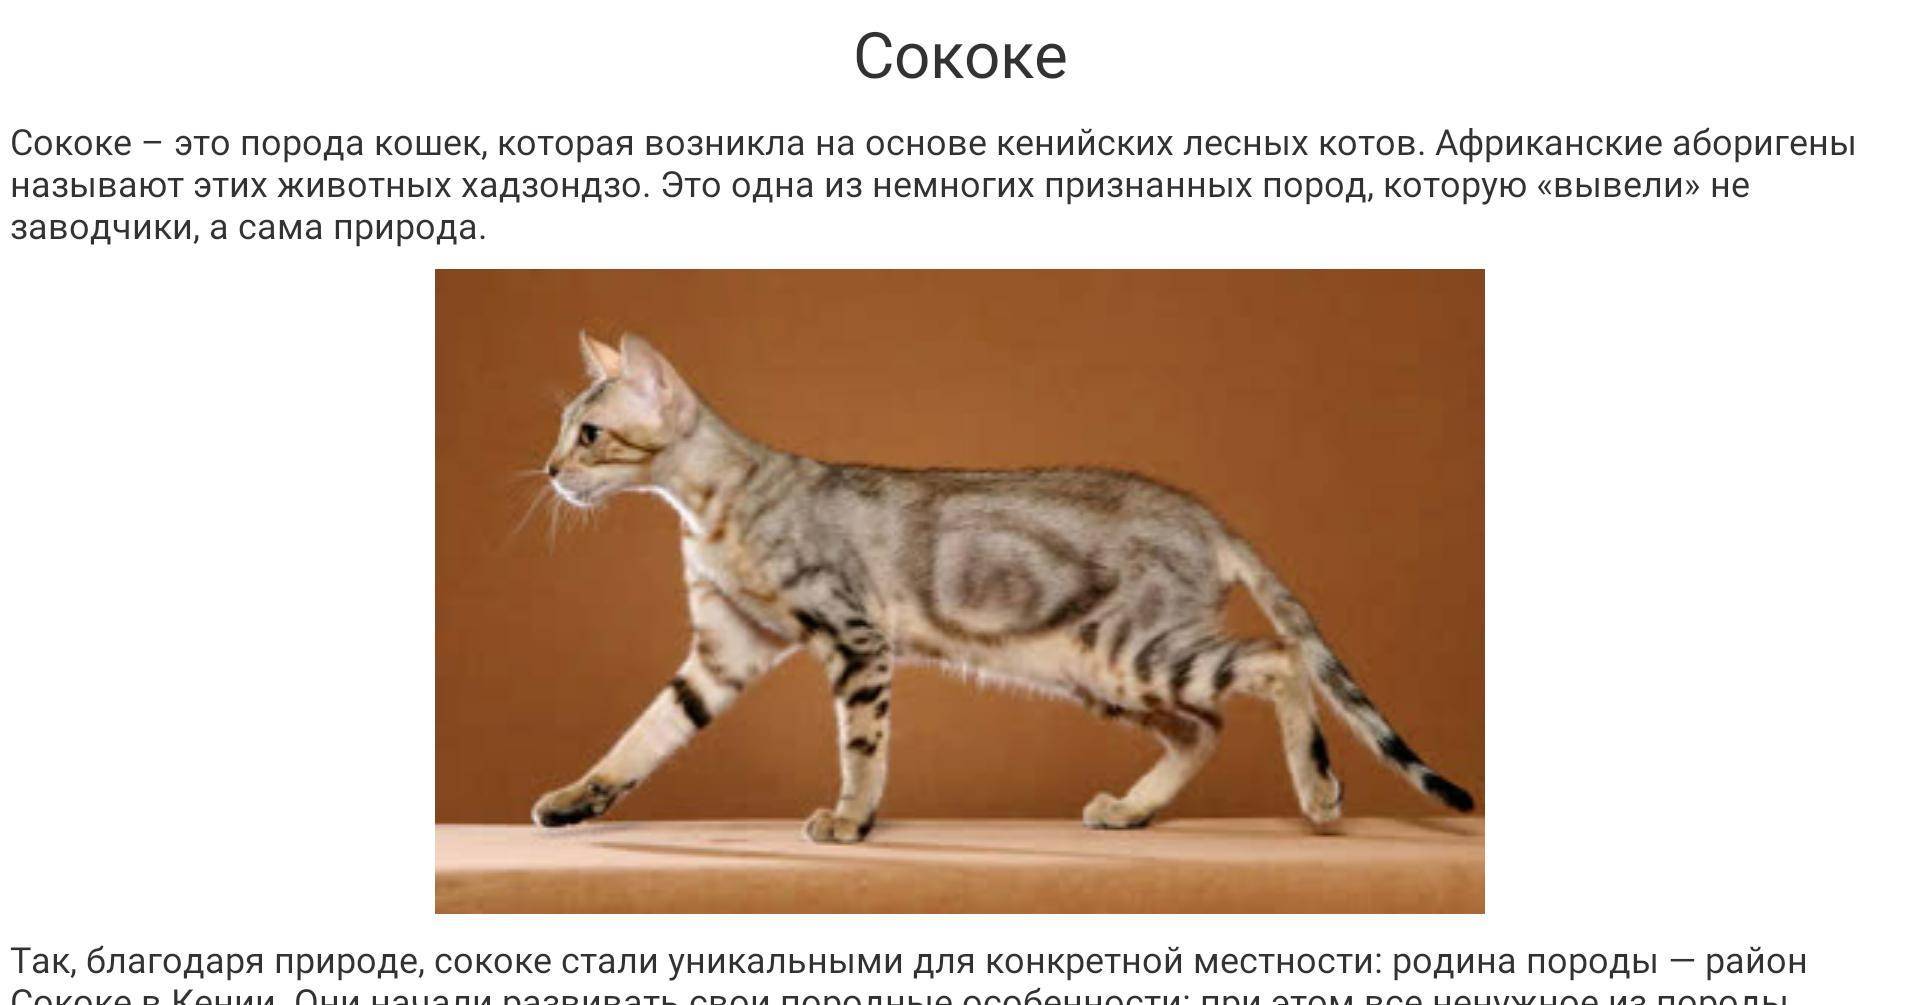 Сококе (соукок, кенийская лесная кошка): описание породы, фото, стандарты, характер и поведение